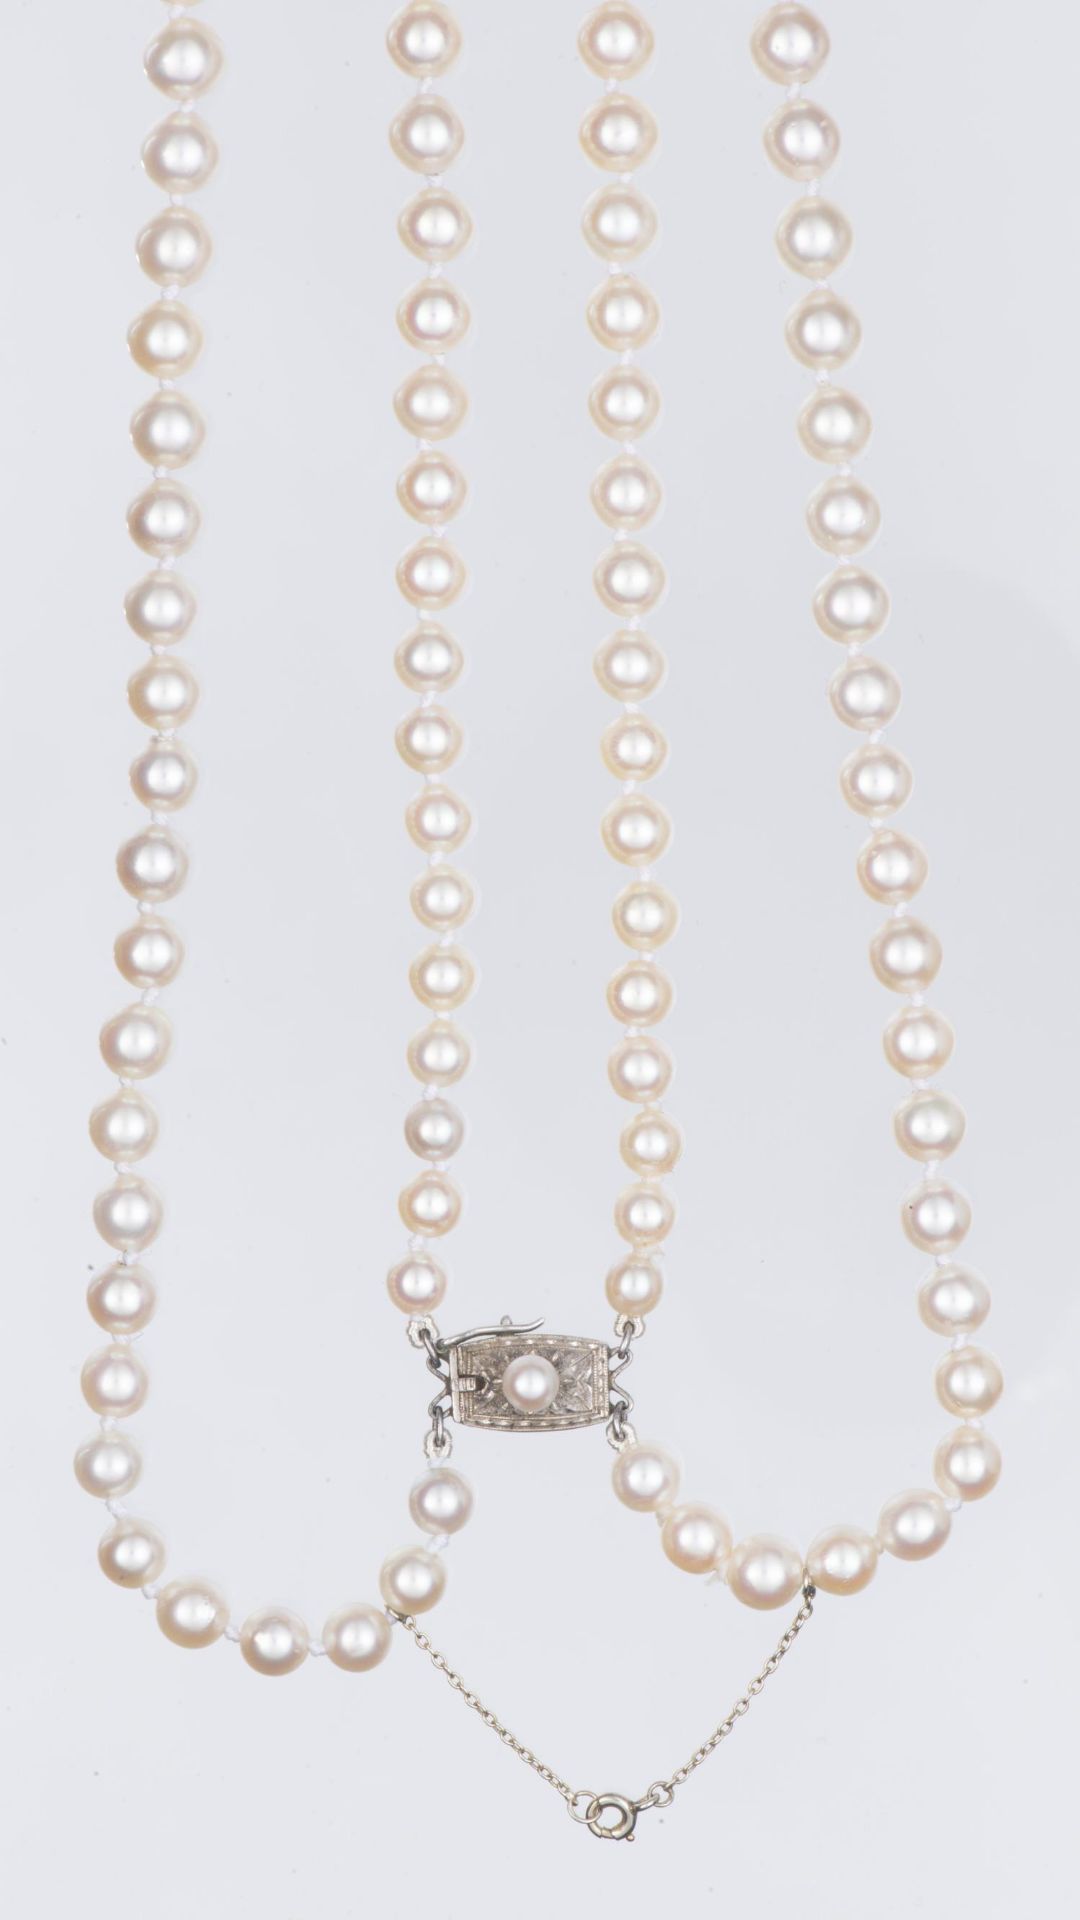 MIKIMOTO collier deux rangs de perles en chute - Image 7 of 10